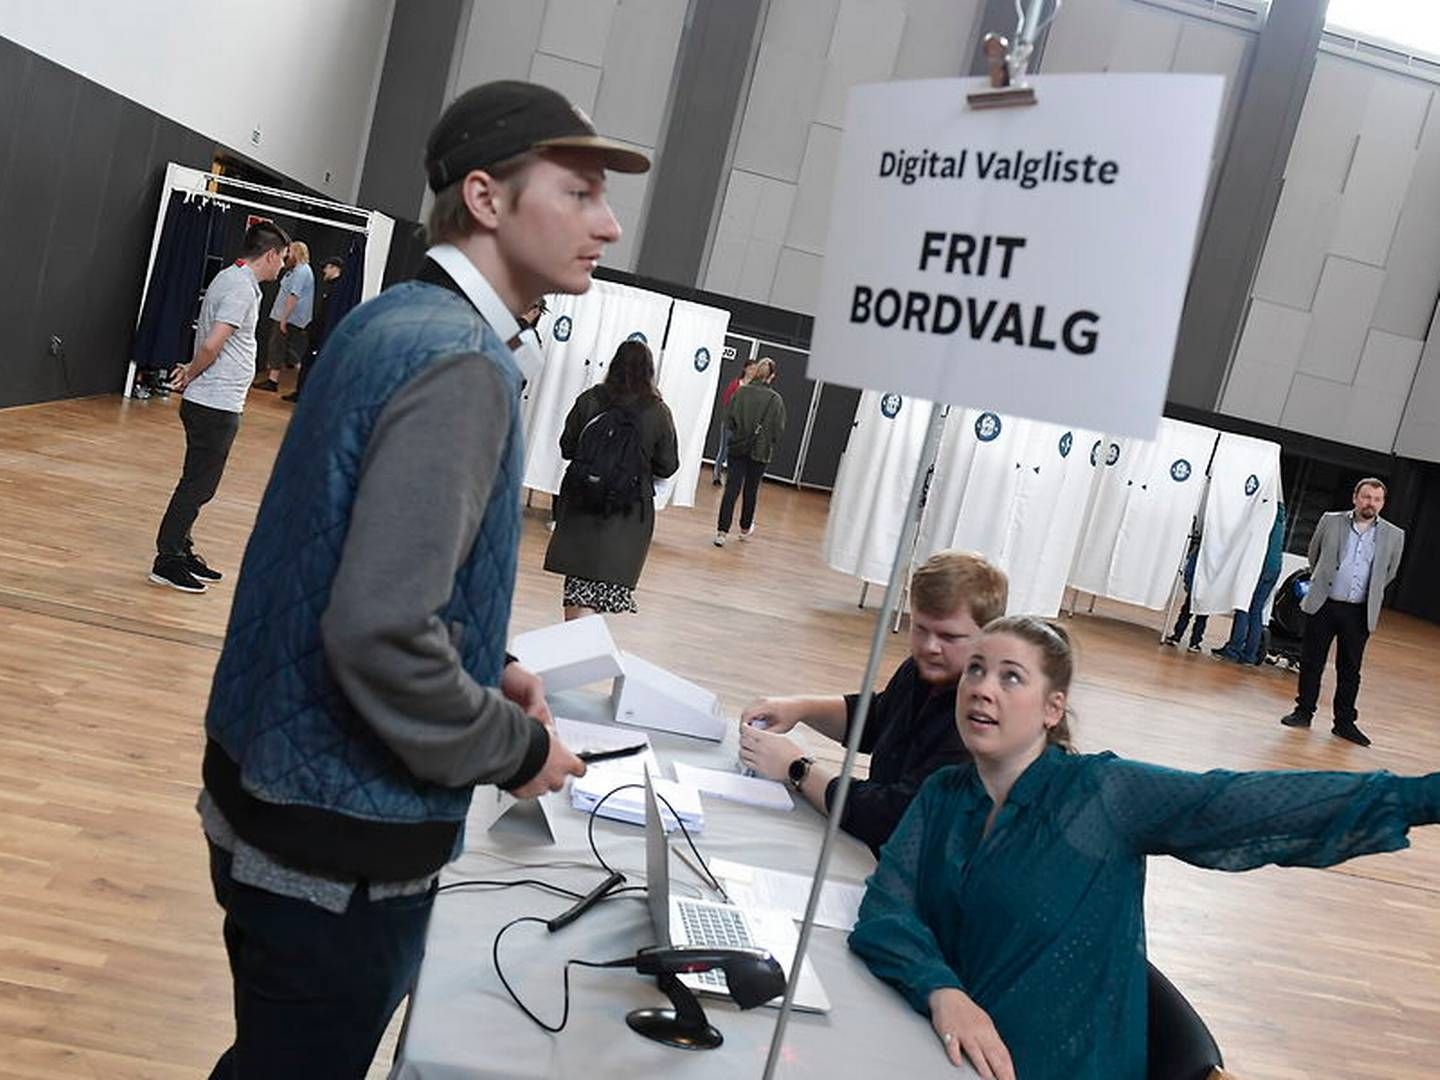 Valgsted i Aalborg åbner efter en valgkamp, hvor erhvervspolitik ikke har fyldt ret meget i debatten. Foto: Rene Schutze / Ritzau Scanpix | Foto: Rene Schutze / Ritzau Scanpix